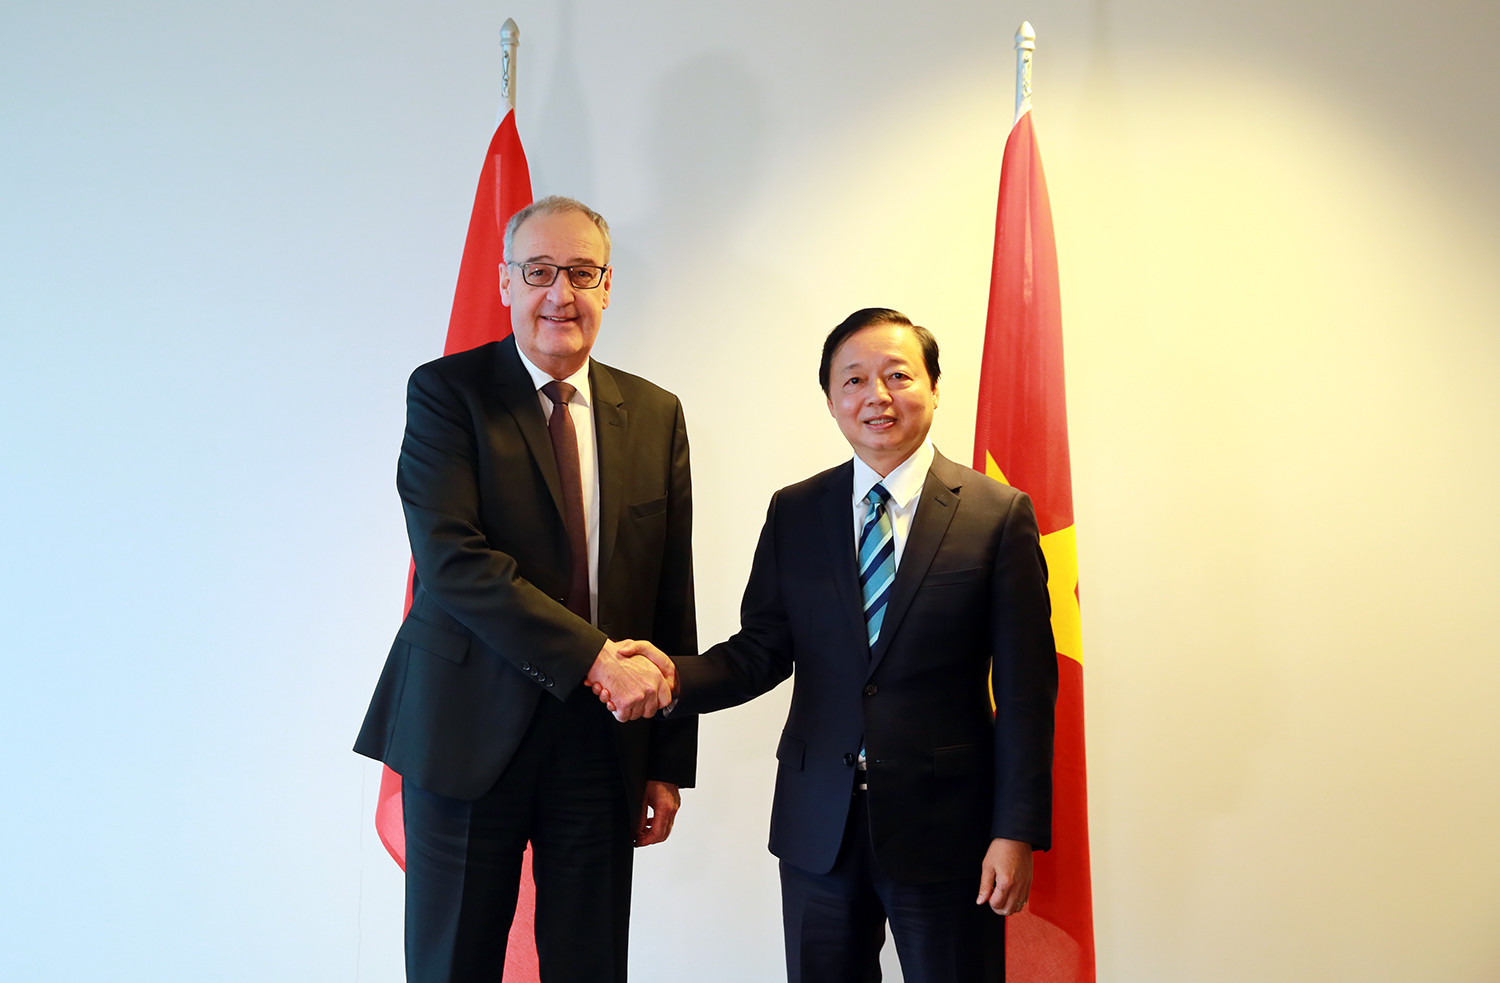 Thụy Sĩ cam kết hỗ trợ Việt Nam chuyển đổi sang nền kinh tế tuần hoàn - Ảnh 1.